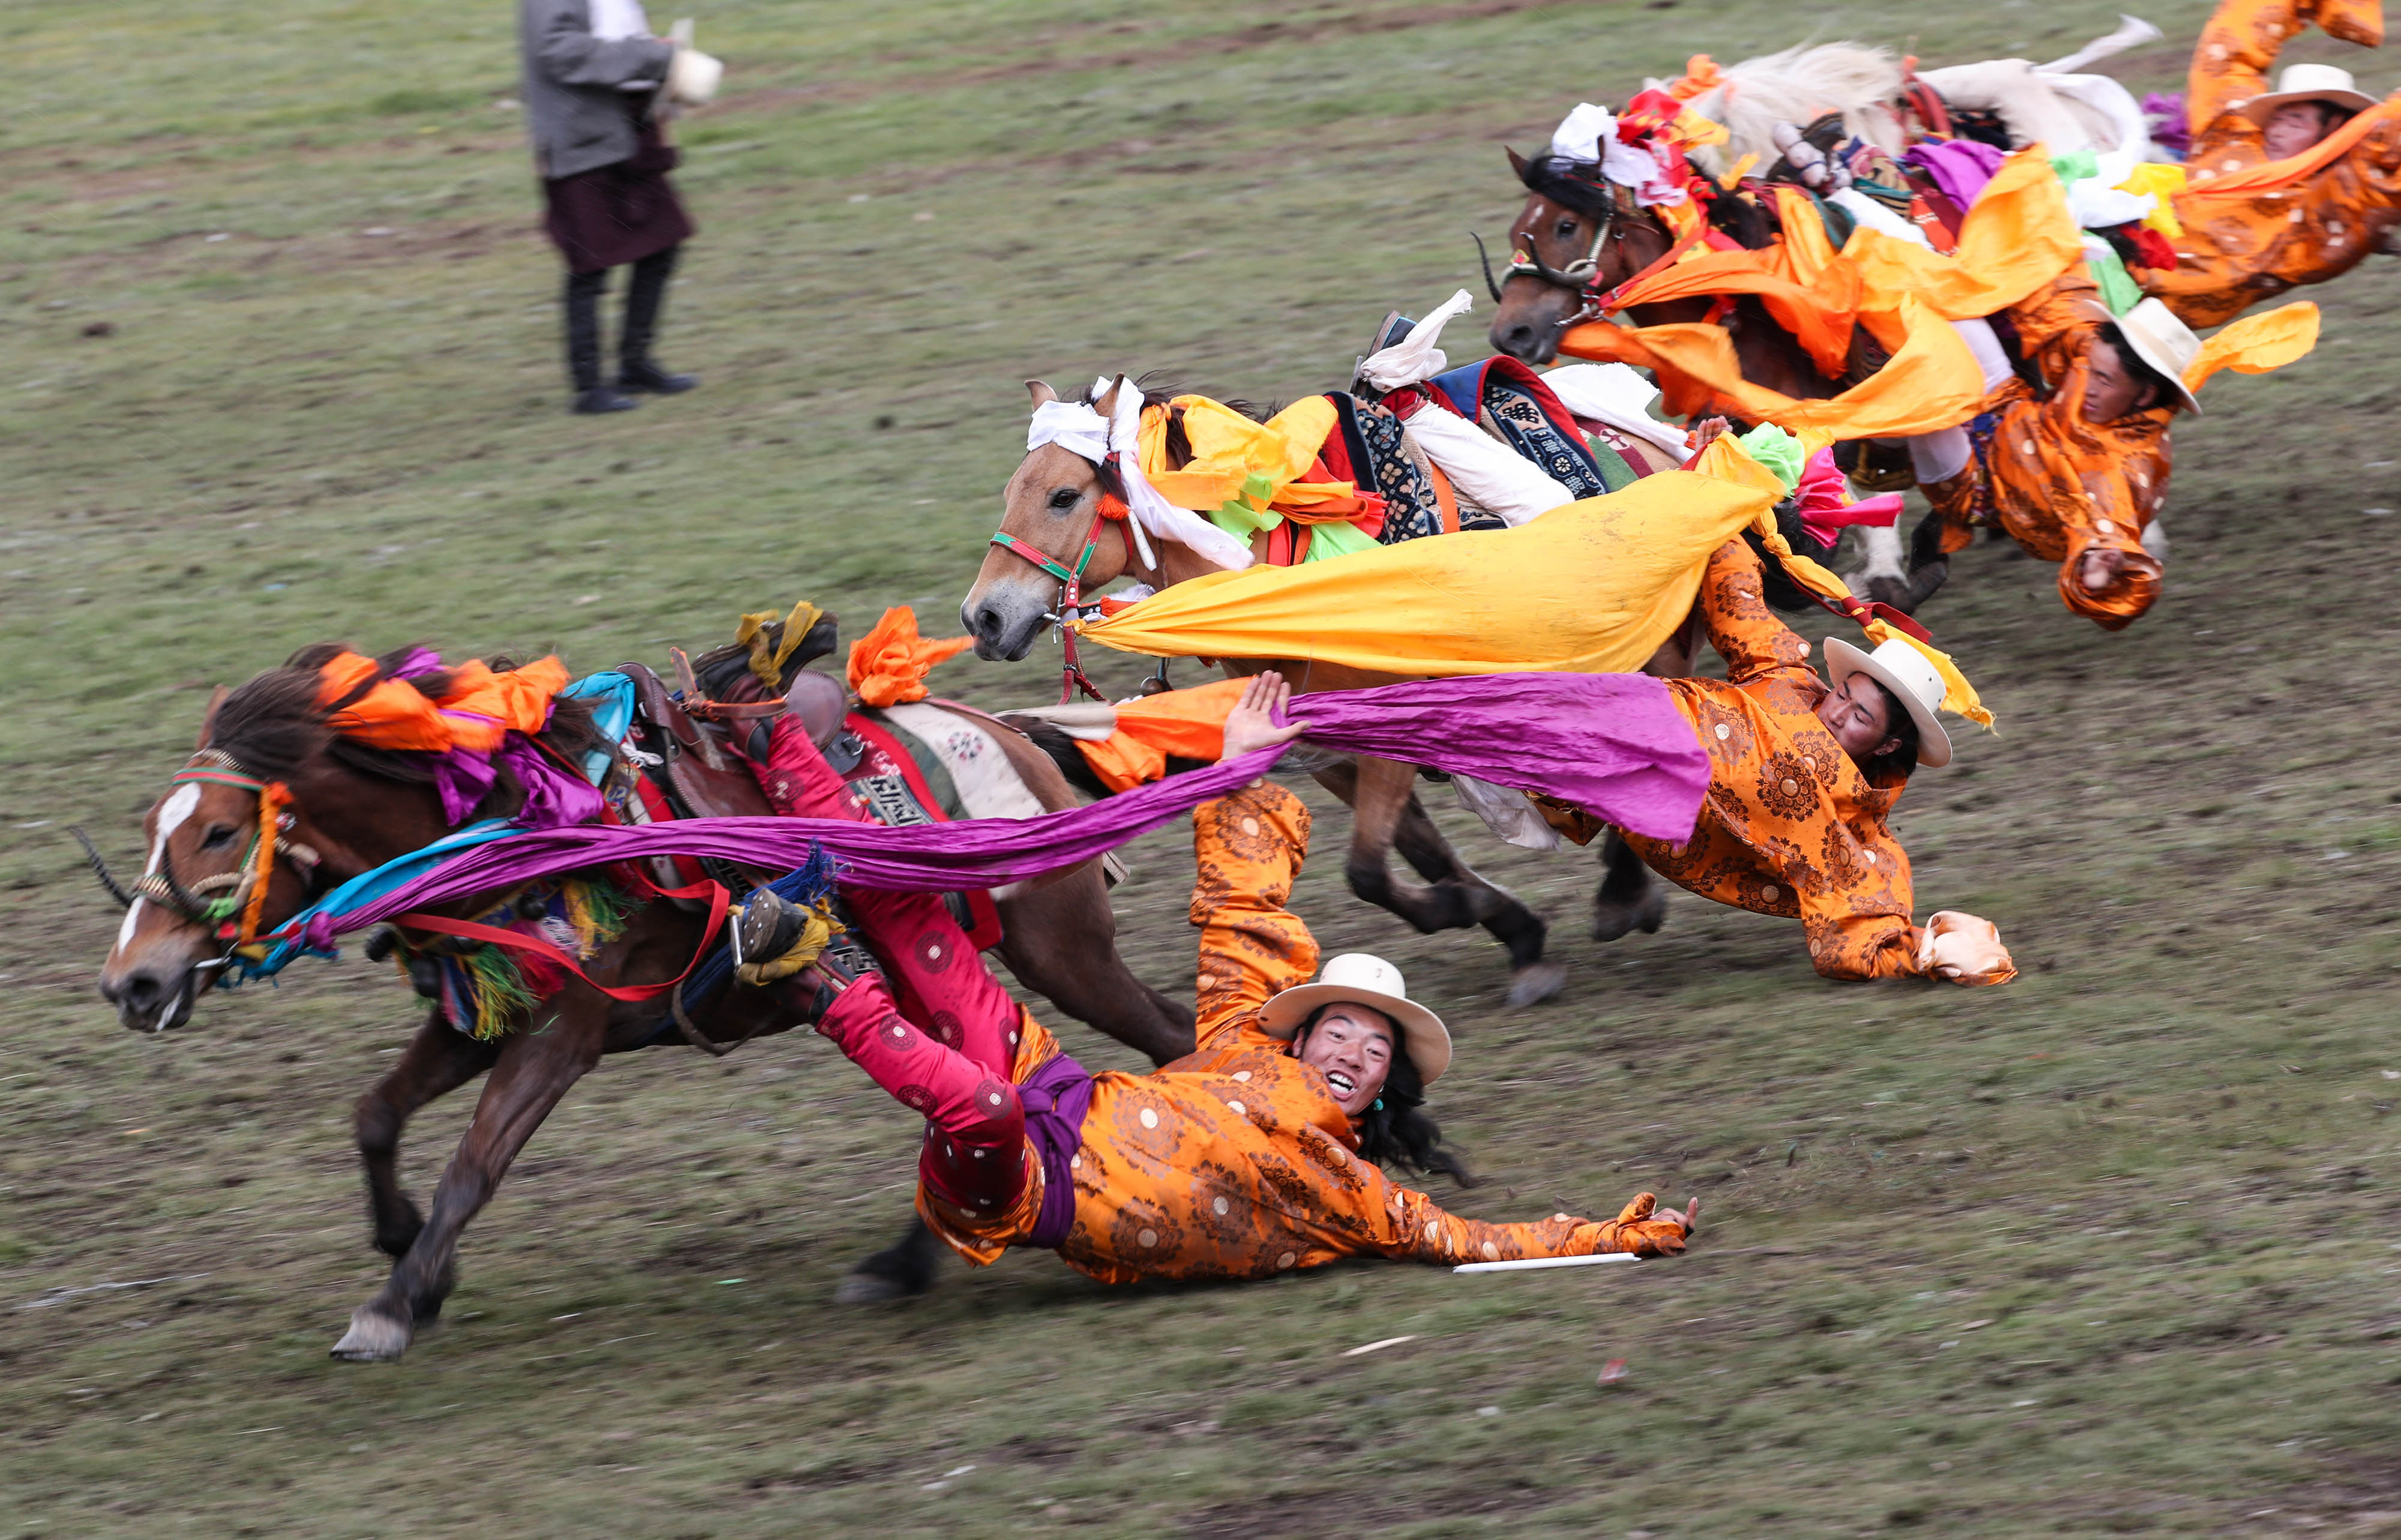 当日,四川省理塘县八一赛马节开幕,近千名牧民展示拾哈达,马上射箭